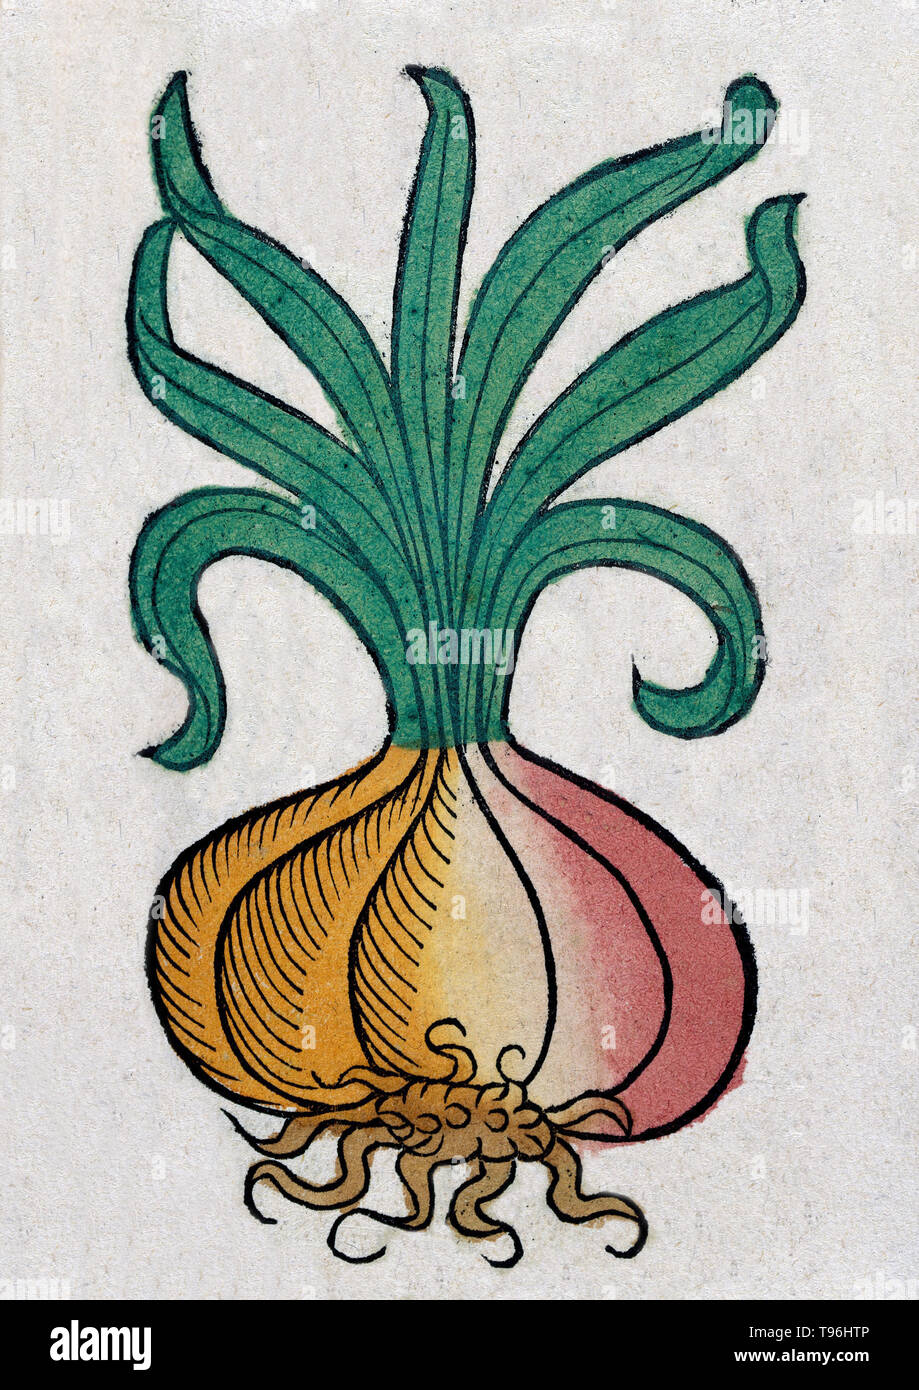 L'oignon est un légume qui est le plus largement les espèces cultivées du genre Allium. Pline l'ancien Roman documenté croyances à propos de la capacité d'améliorer l'oignon maux oculaires, l'aide à dormir, et de guérir toutes sortes de plaies orales et de dents de morsures, le lumbago, et même de la dysenterie. L'Hortus Sanitatis (Jardin de la santé), la première encyclopédie d'histoire naturelle, a été publié par Jacob Meydenbach en Allemagne, 1491. Banque D'Images